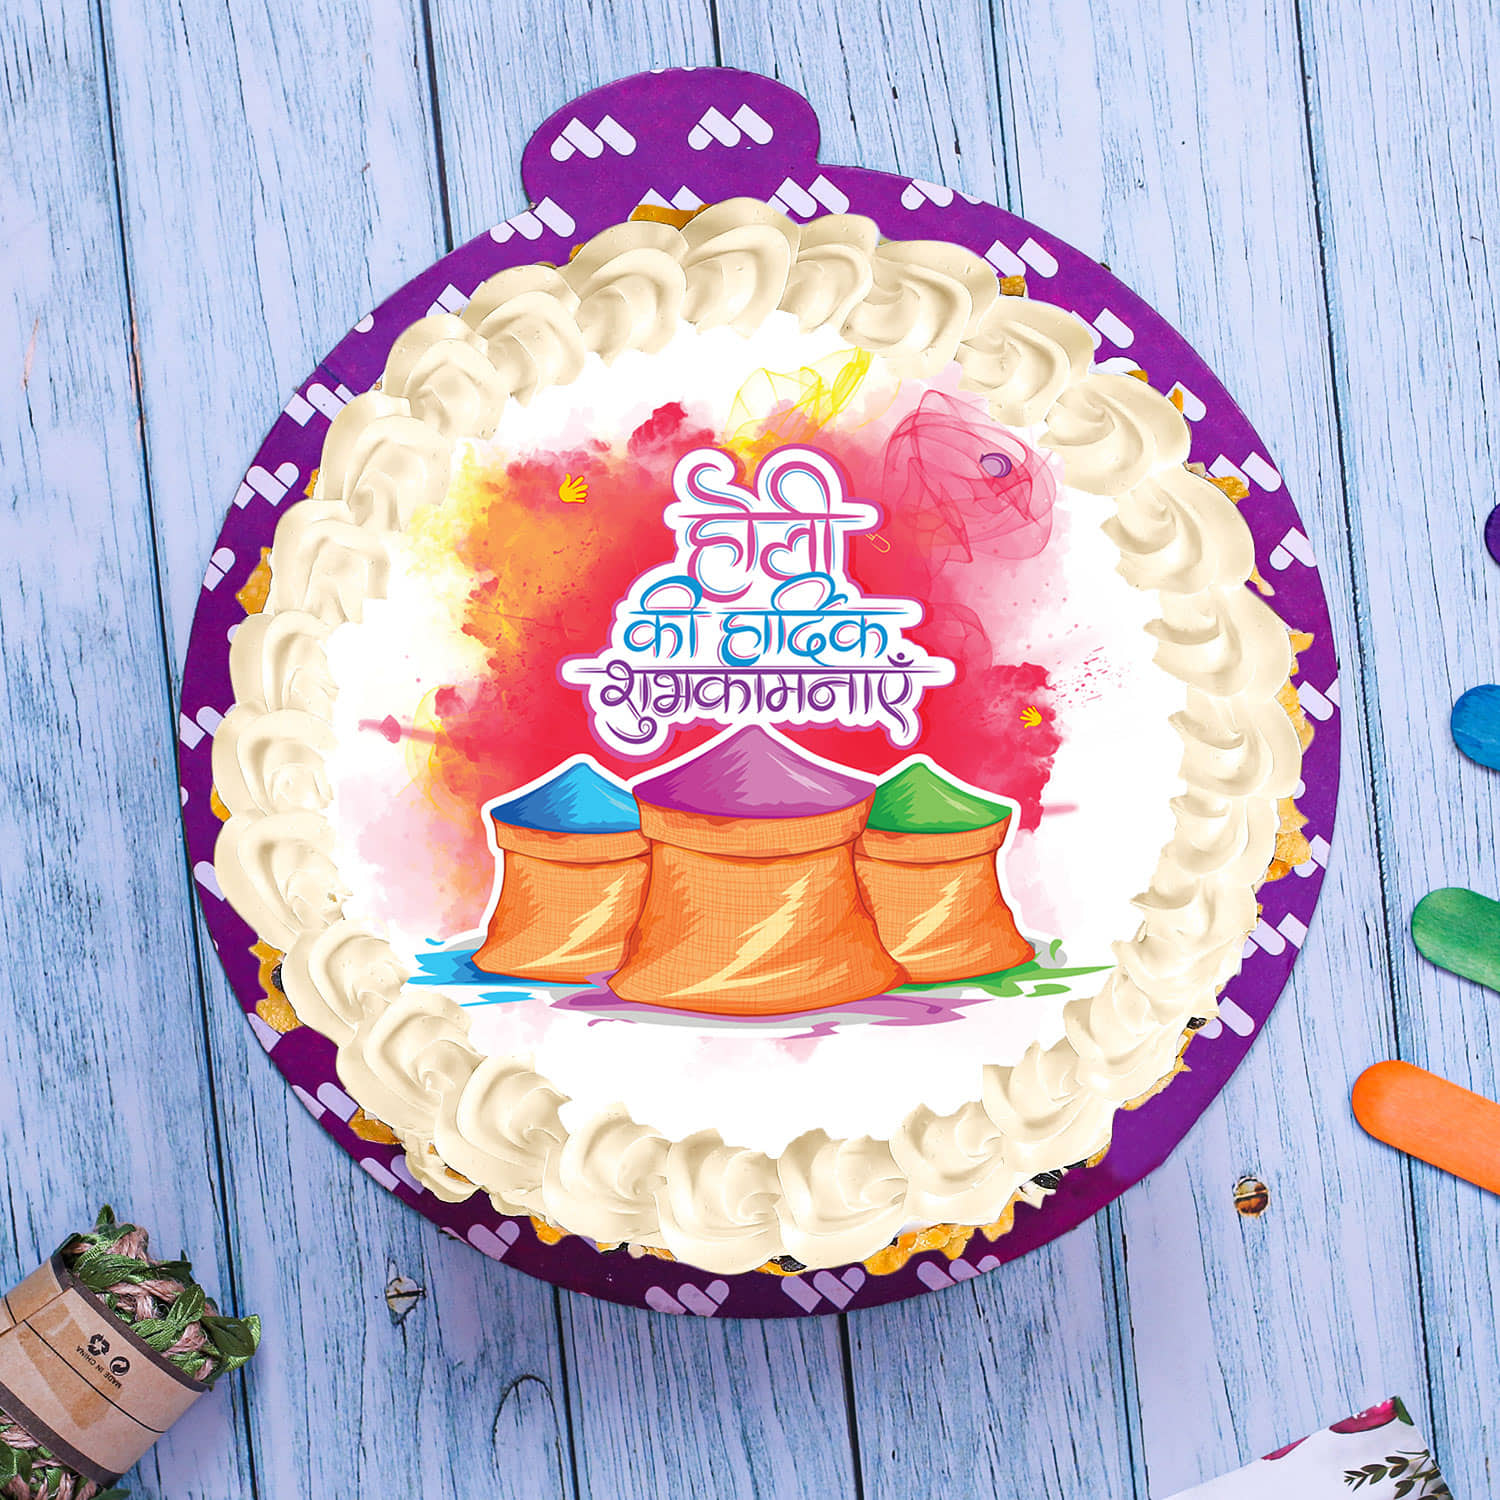 26 Sankranti ideas | cupcake cakes, campfire cake, cake decorating